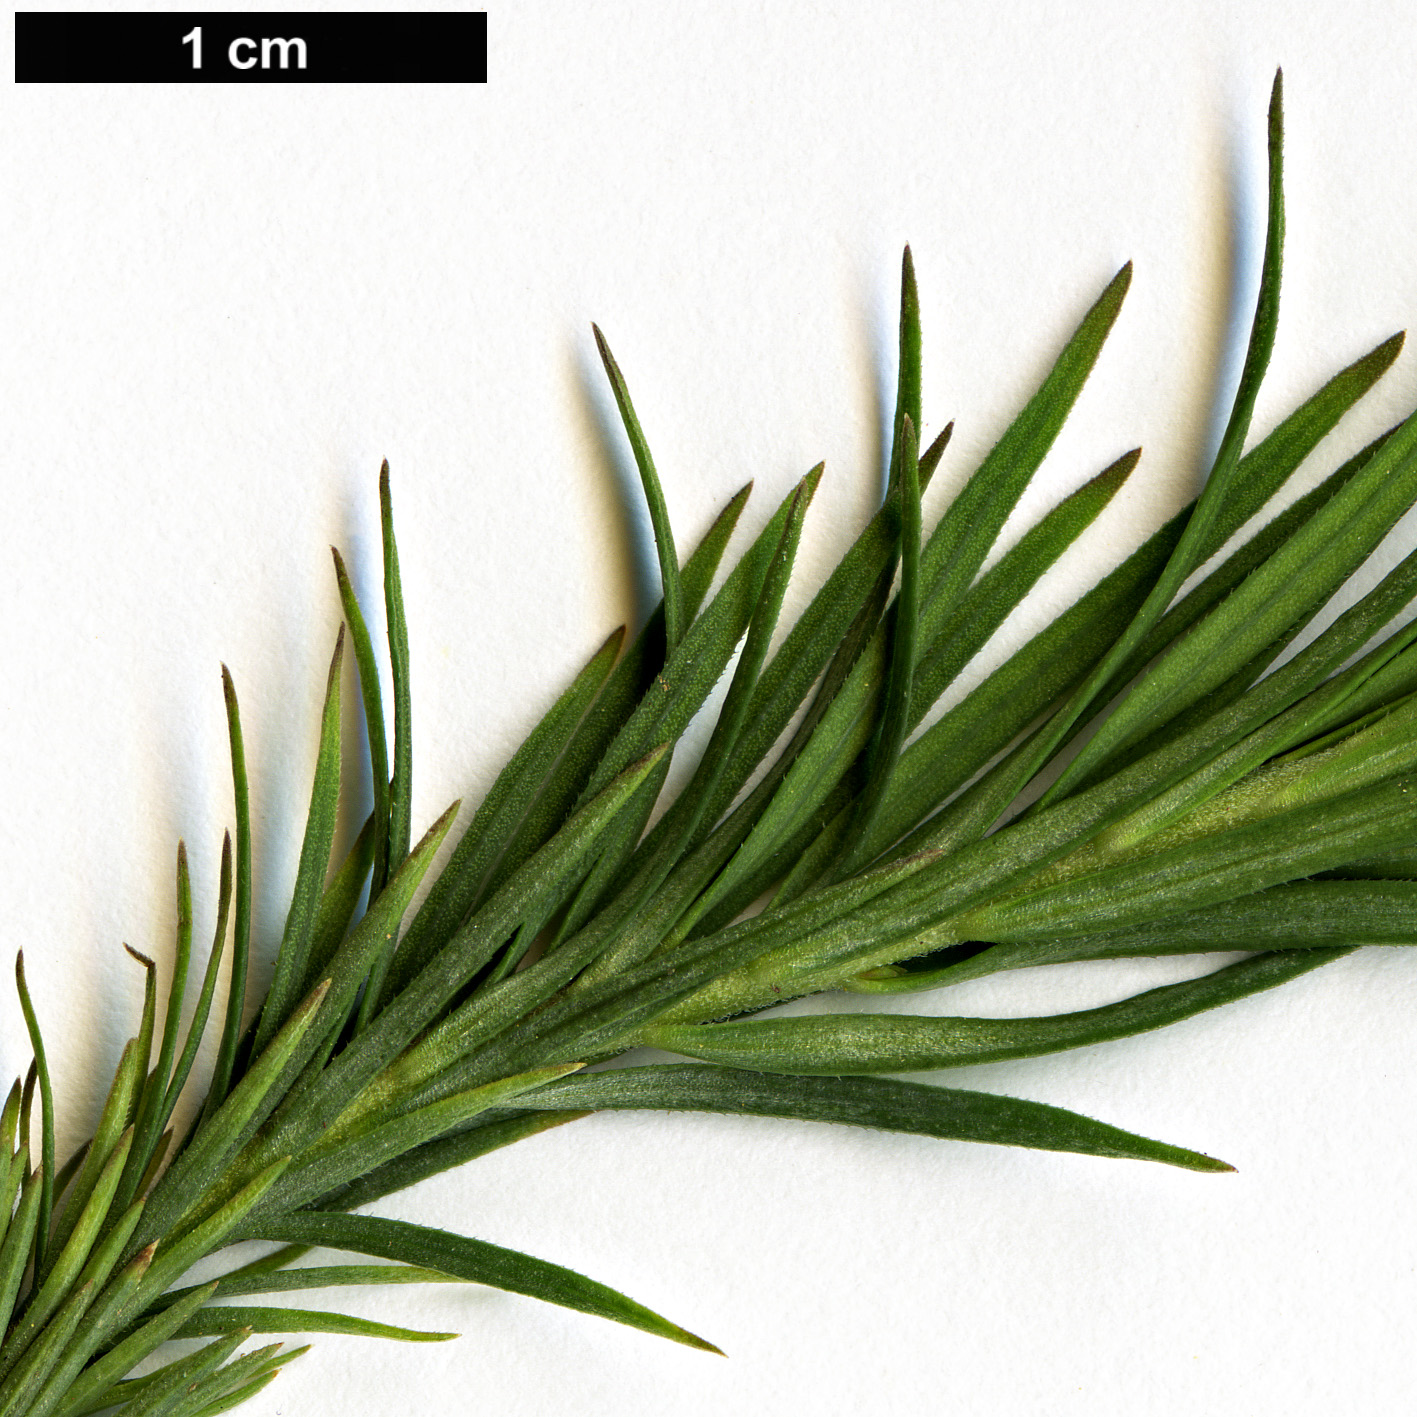 High resolution image: Family: Linaceae - Genus: Linum - Taxon: suffruticosum